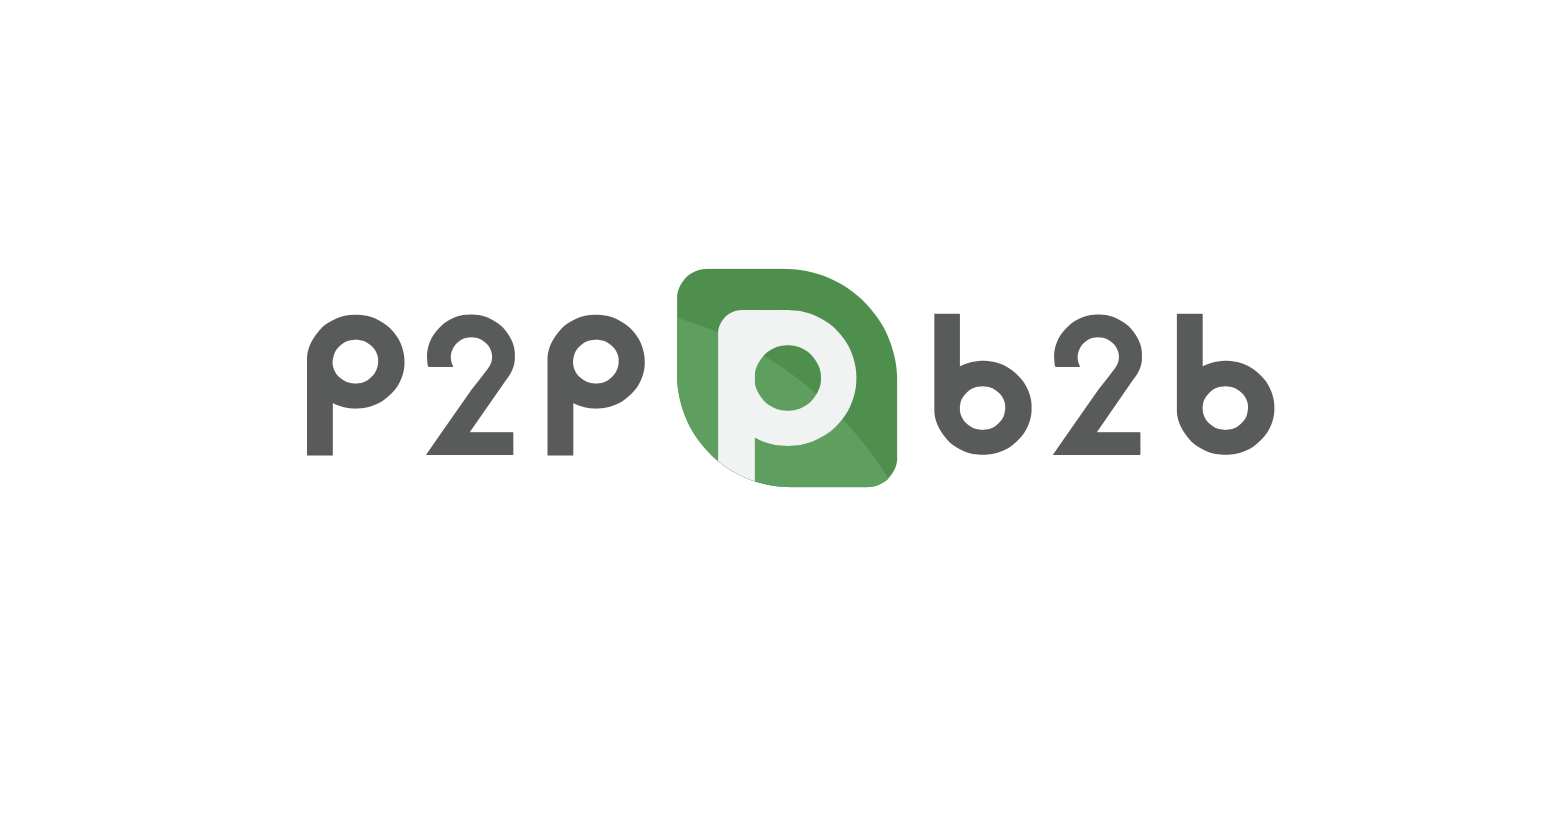 P2pb2b лого. P2p b2b. P2p logo. P2p картинки.